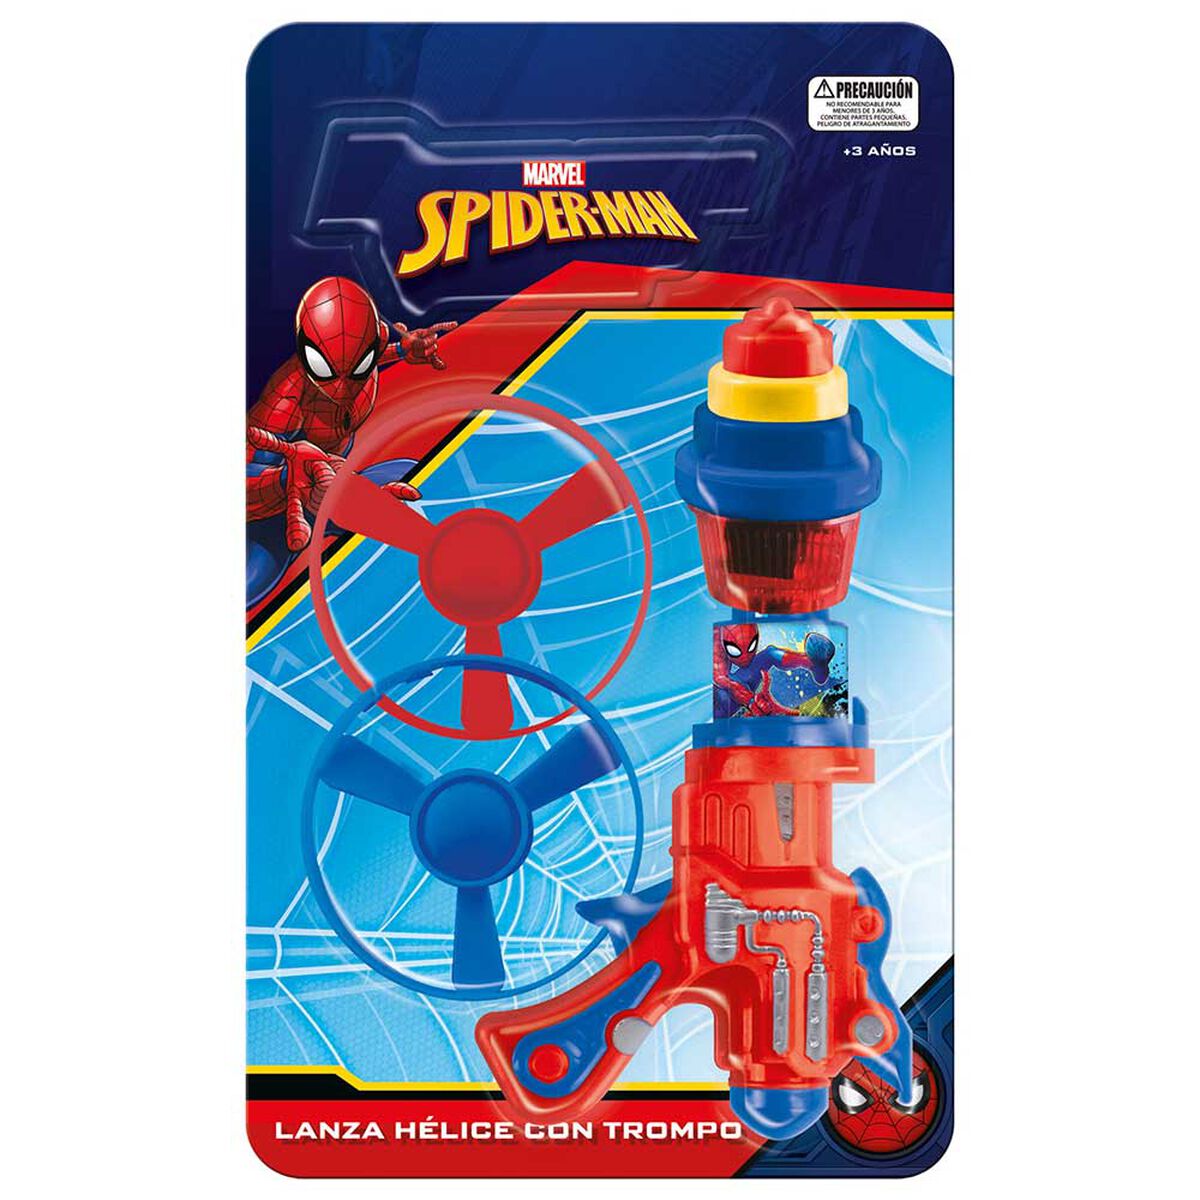 Lanza Helices y Trompos Spiderman Marvel